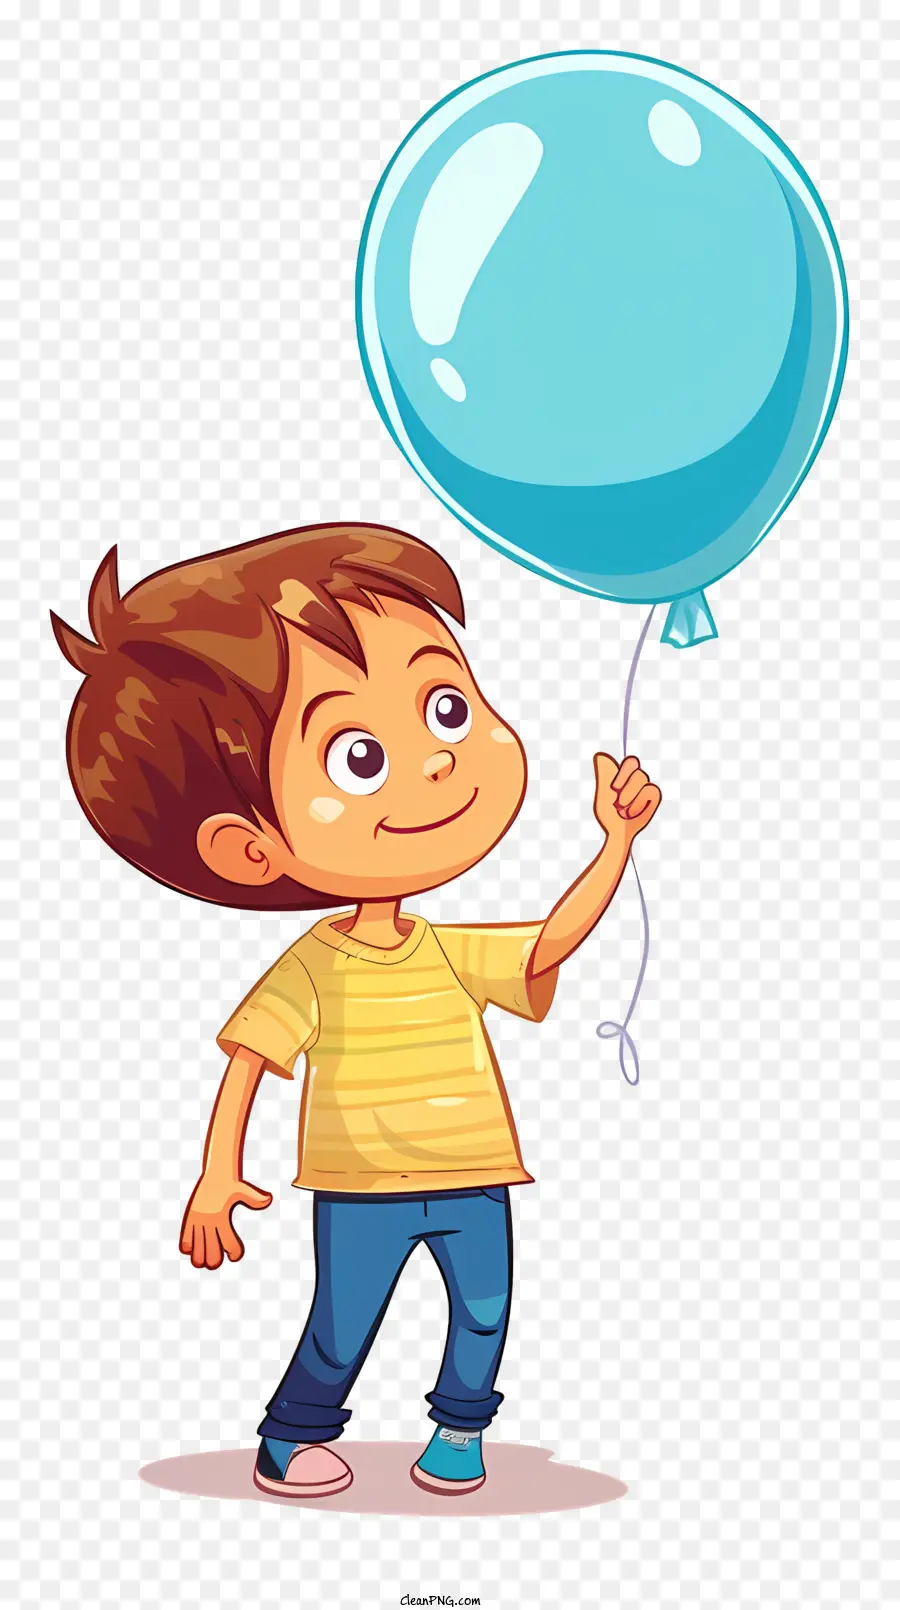 palloncino blu - Ragazzo felice che tiene in pallone blu, guardando a sinistra